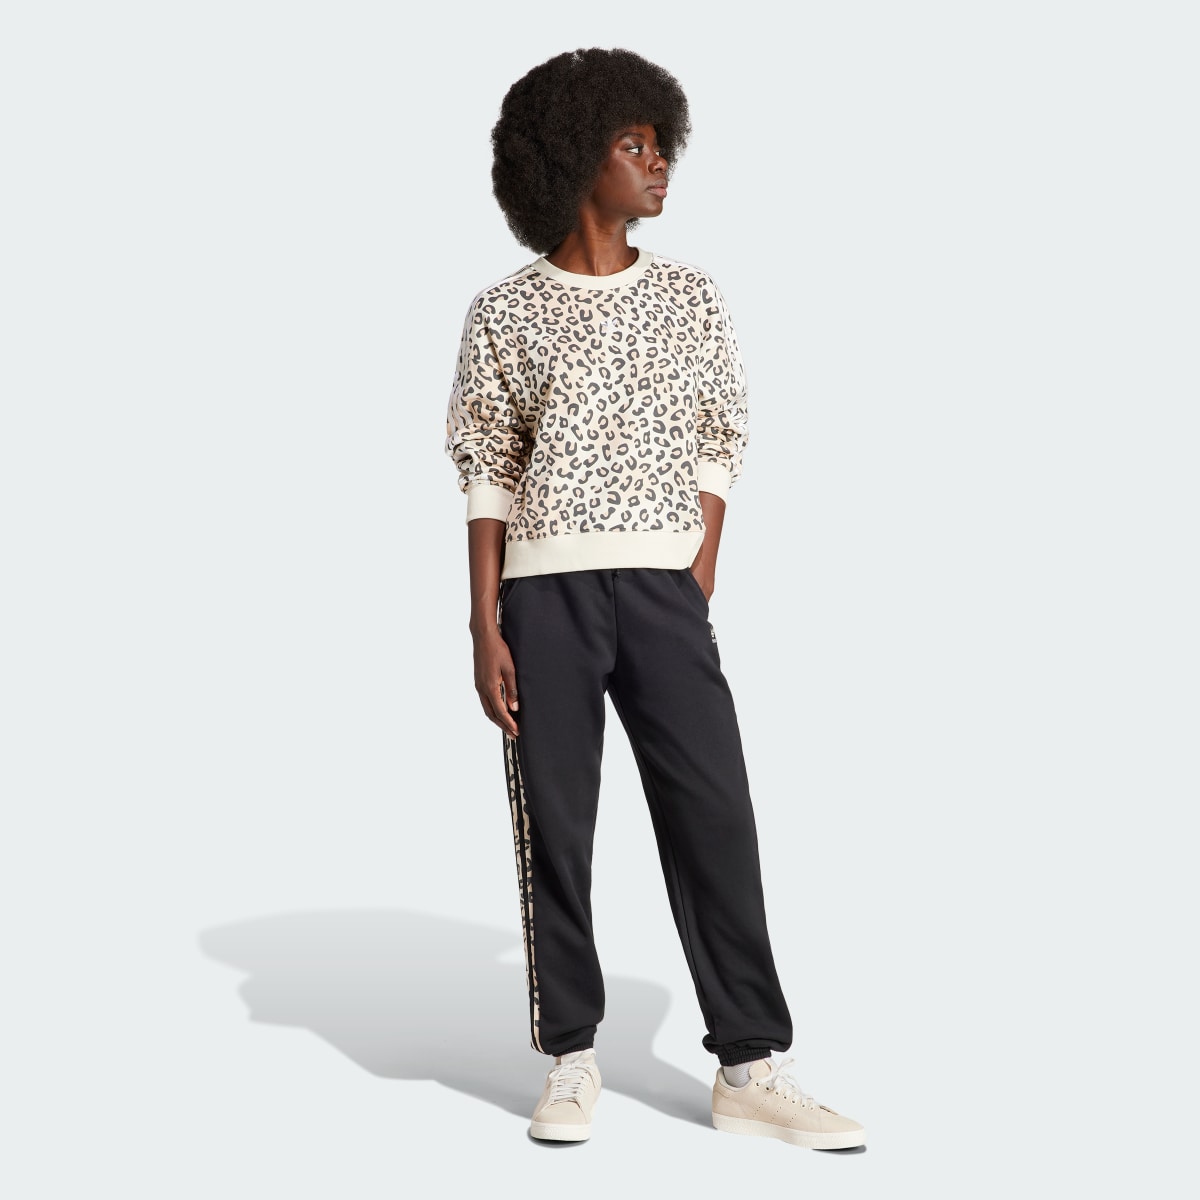 Adidas Originals Leopard Luxe Trefoil Crew Sweatshirt. 4